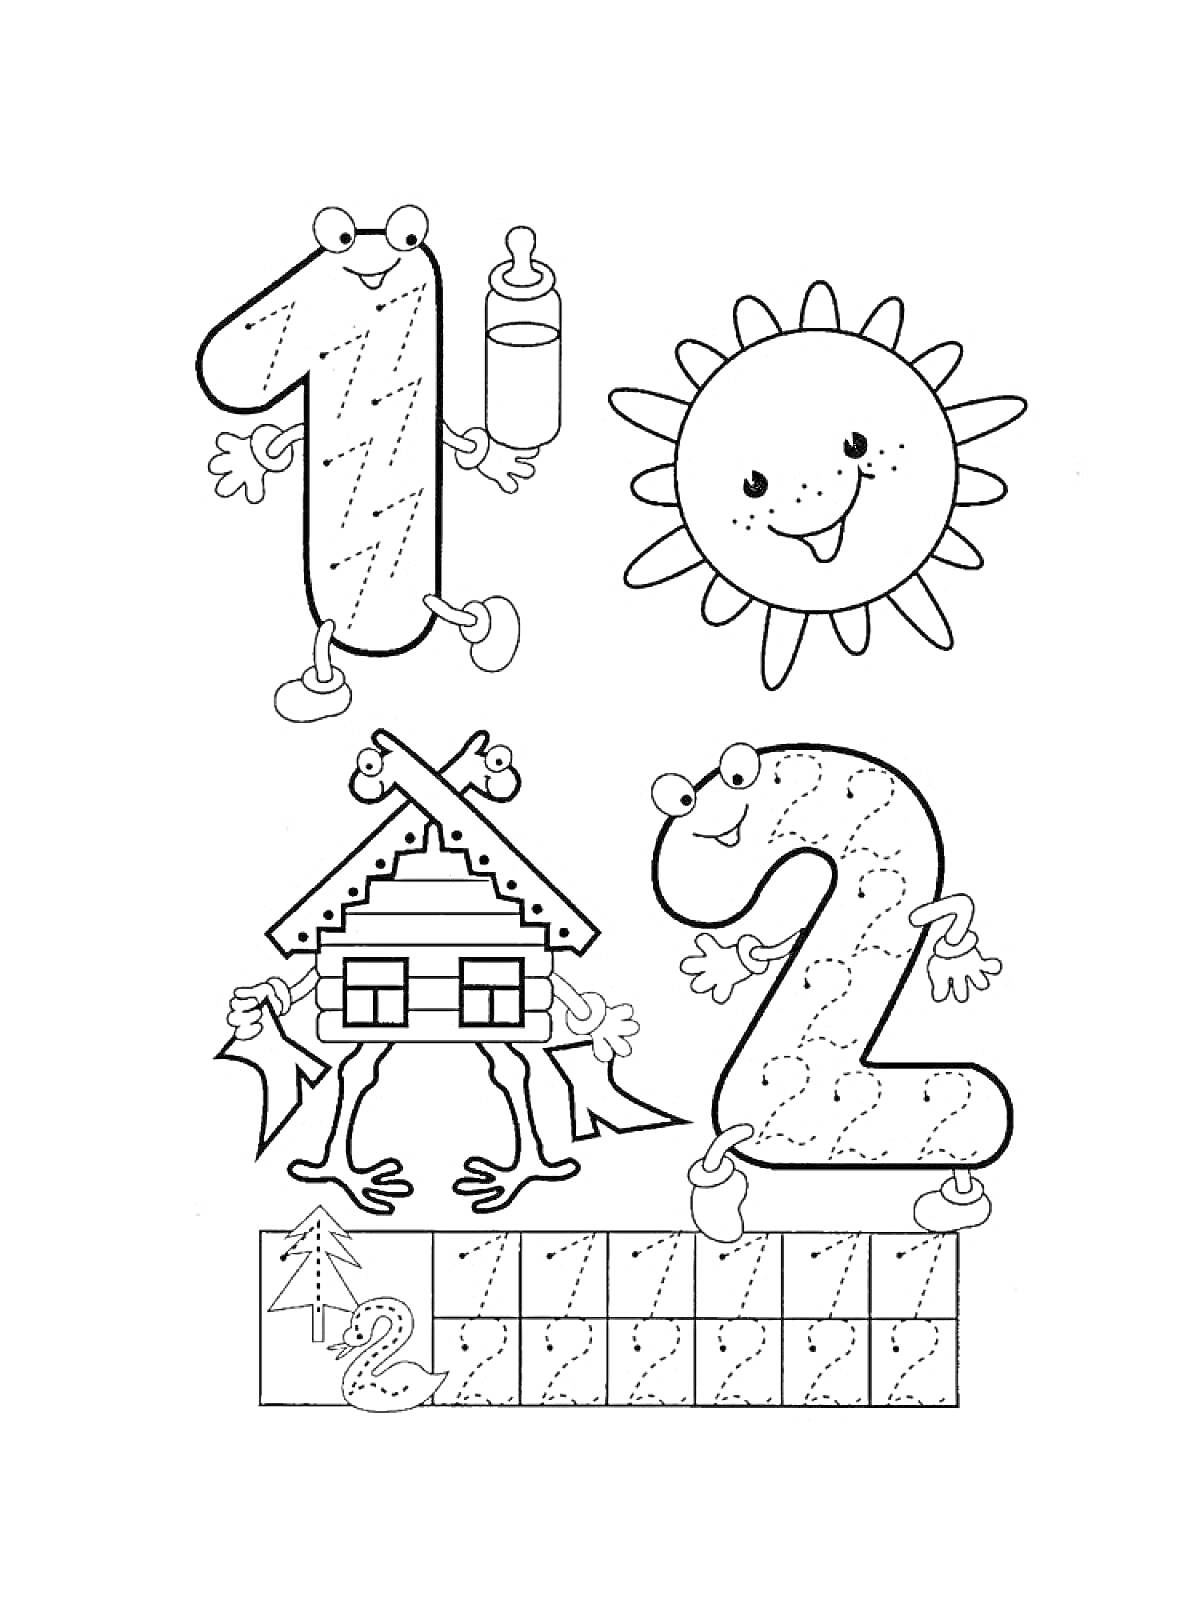 Раскраска Цифры 1 и 2 с душками и лицами, домик с ногами и руками, улыбающееся солнце, клеточки для прописей, ёлочка, гриб